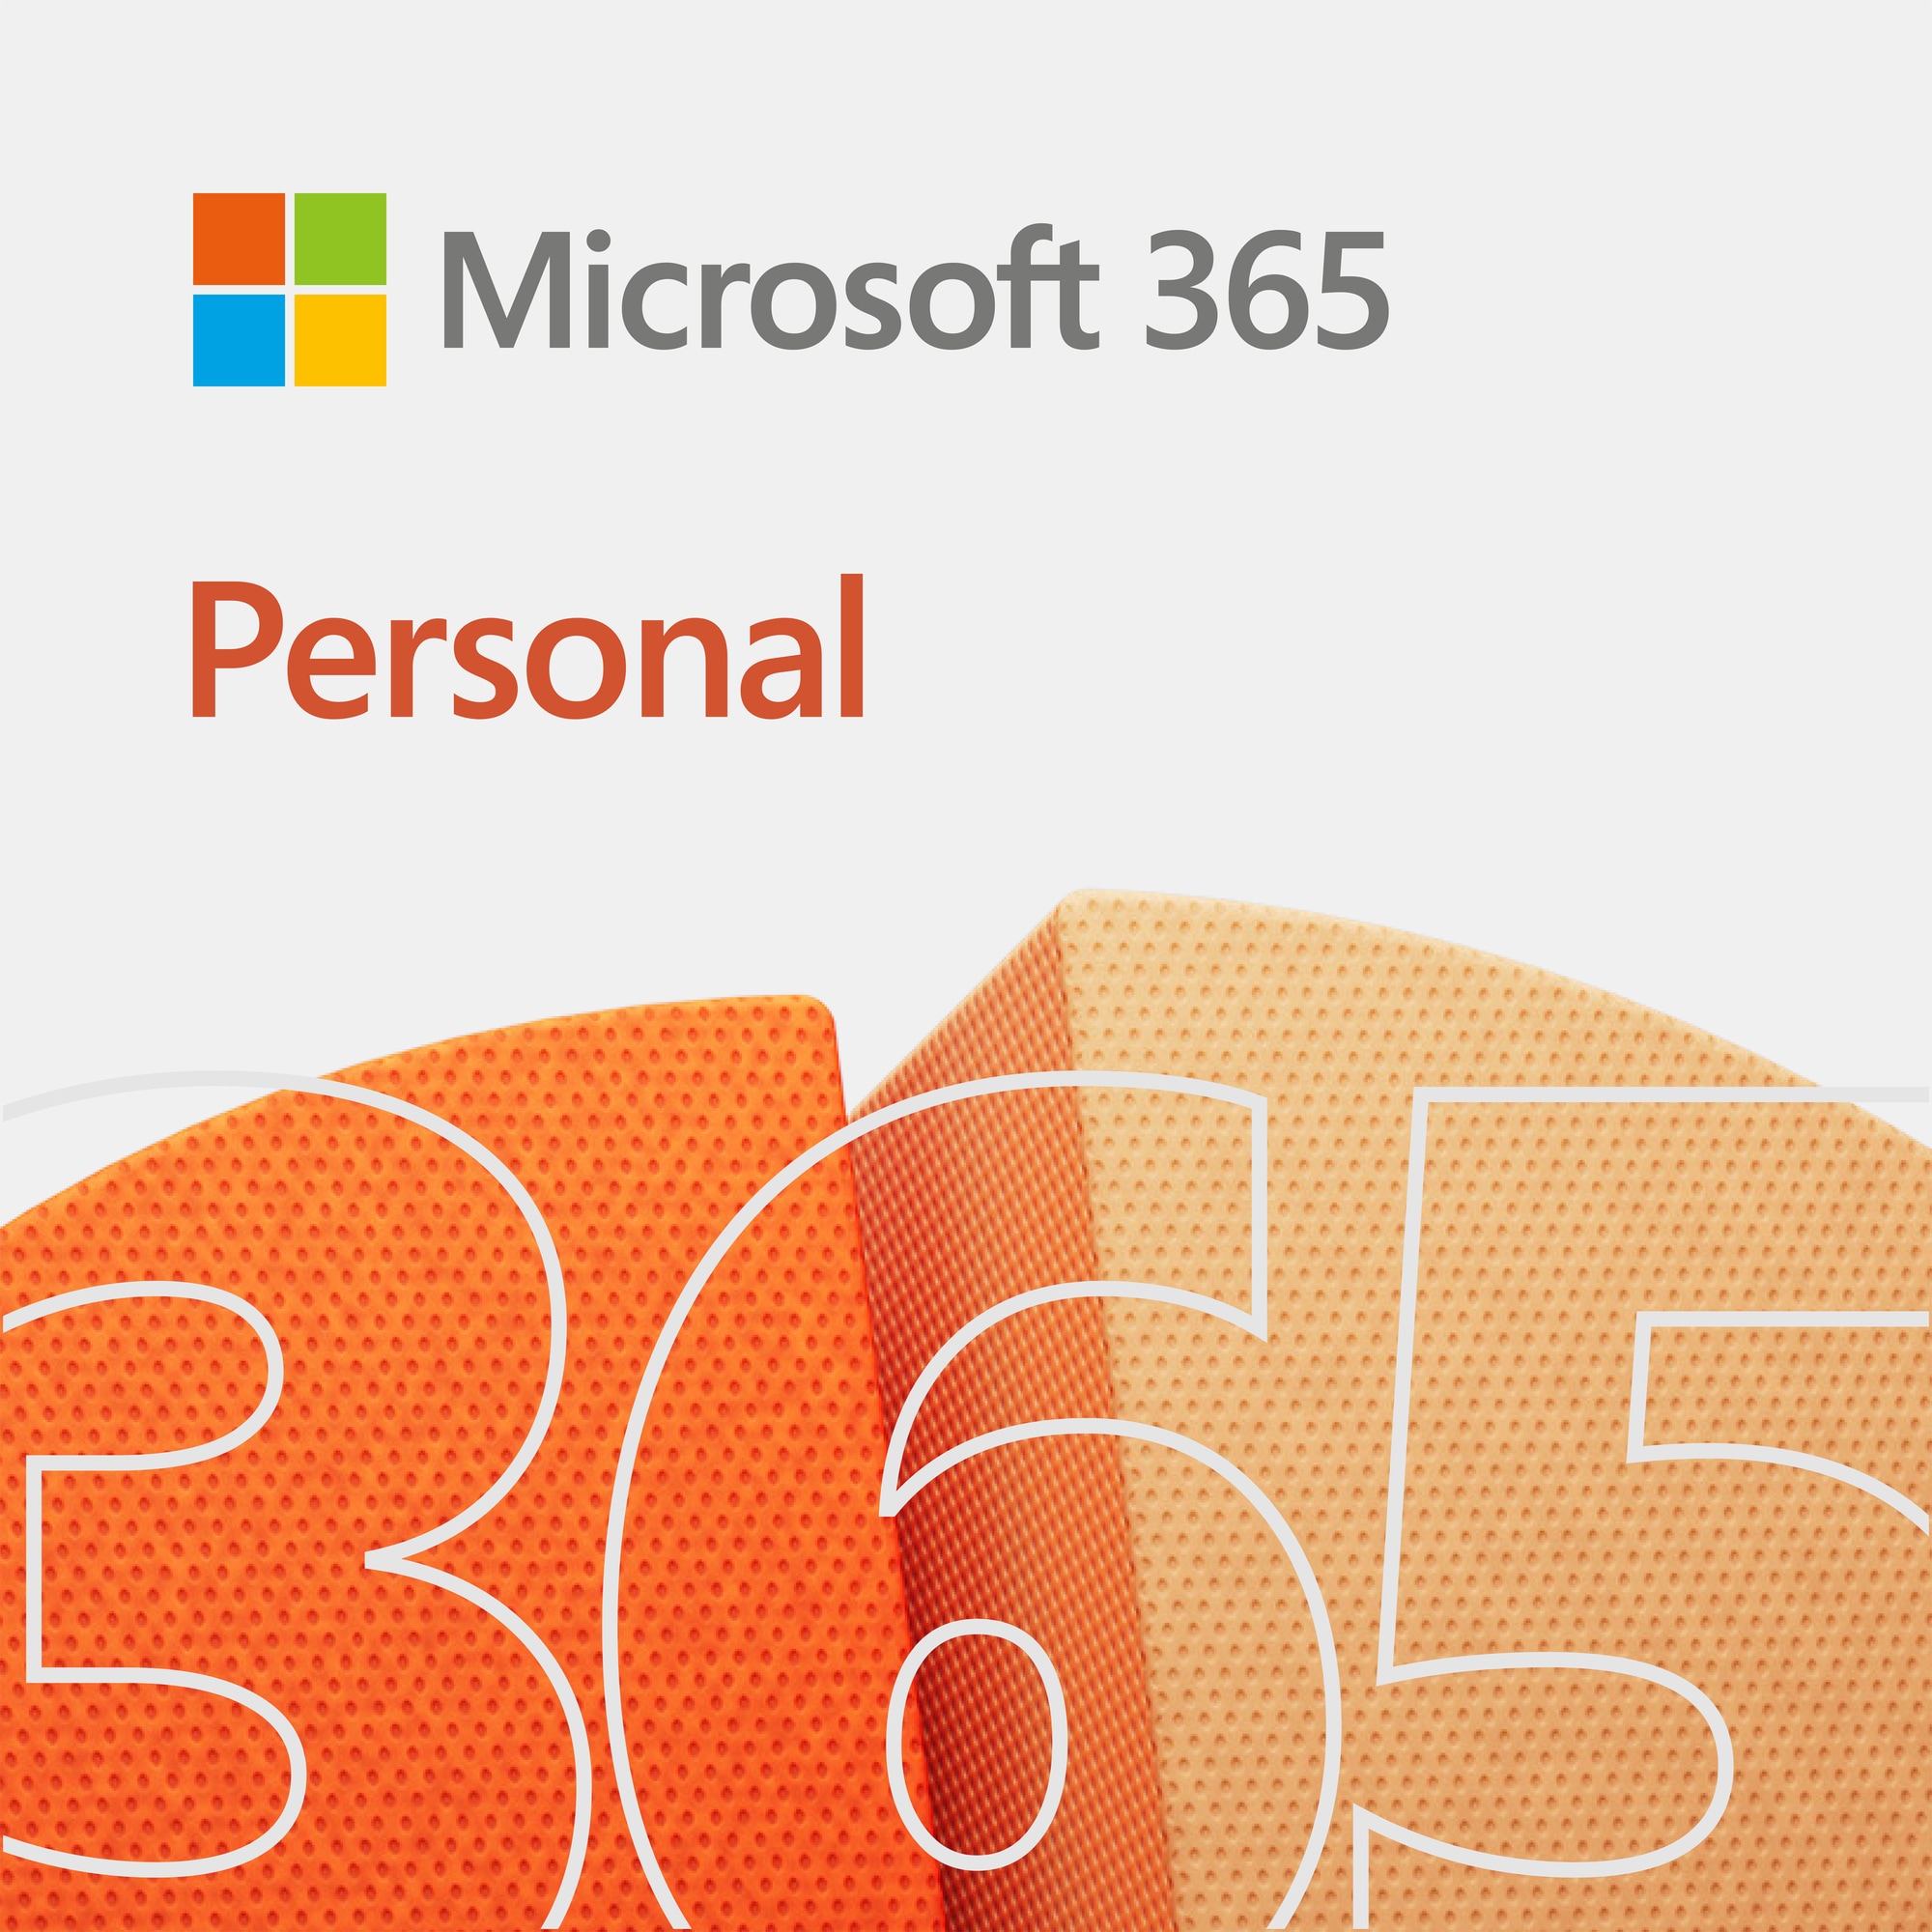 Microsoft 365 Personal ger dig de klassledande programmen: Word, Excel, PowerPoint, Outlook, OneNote, Publisher och Access. Njut av multi-plattform-support och dela dina dina filer mellan dina enheter.